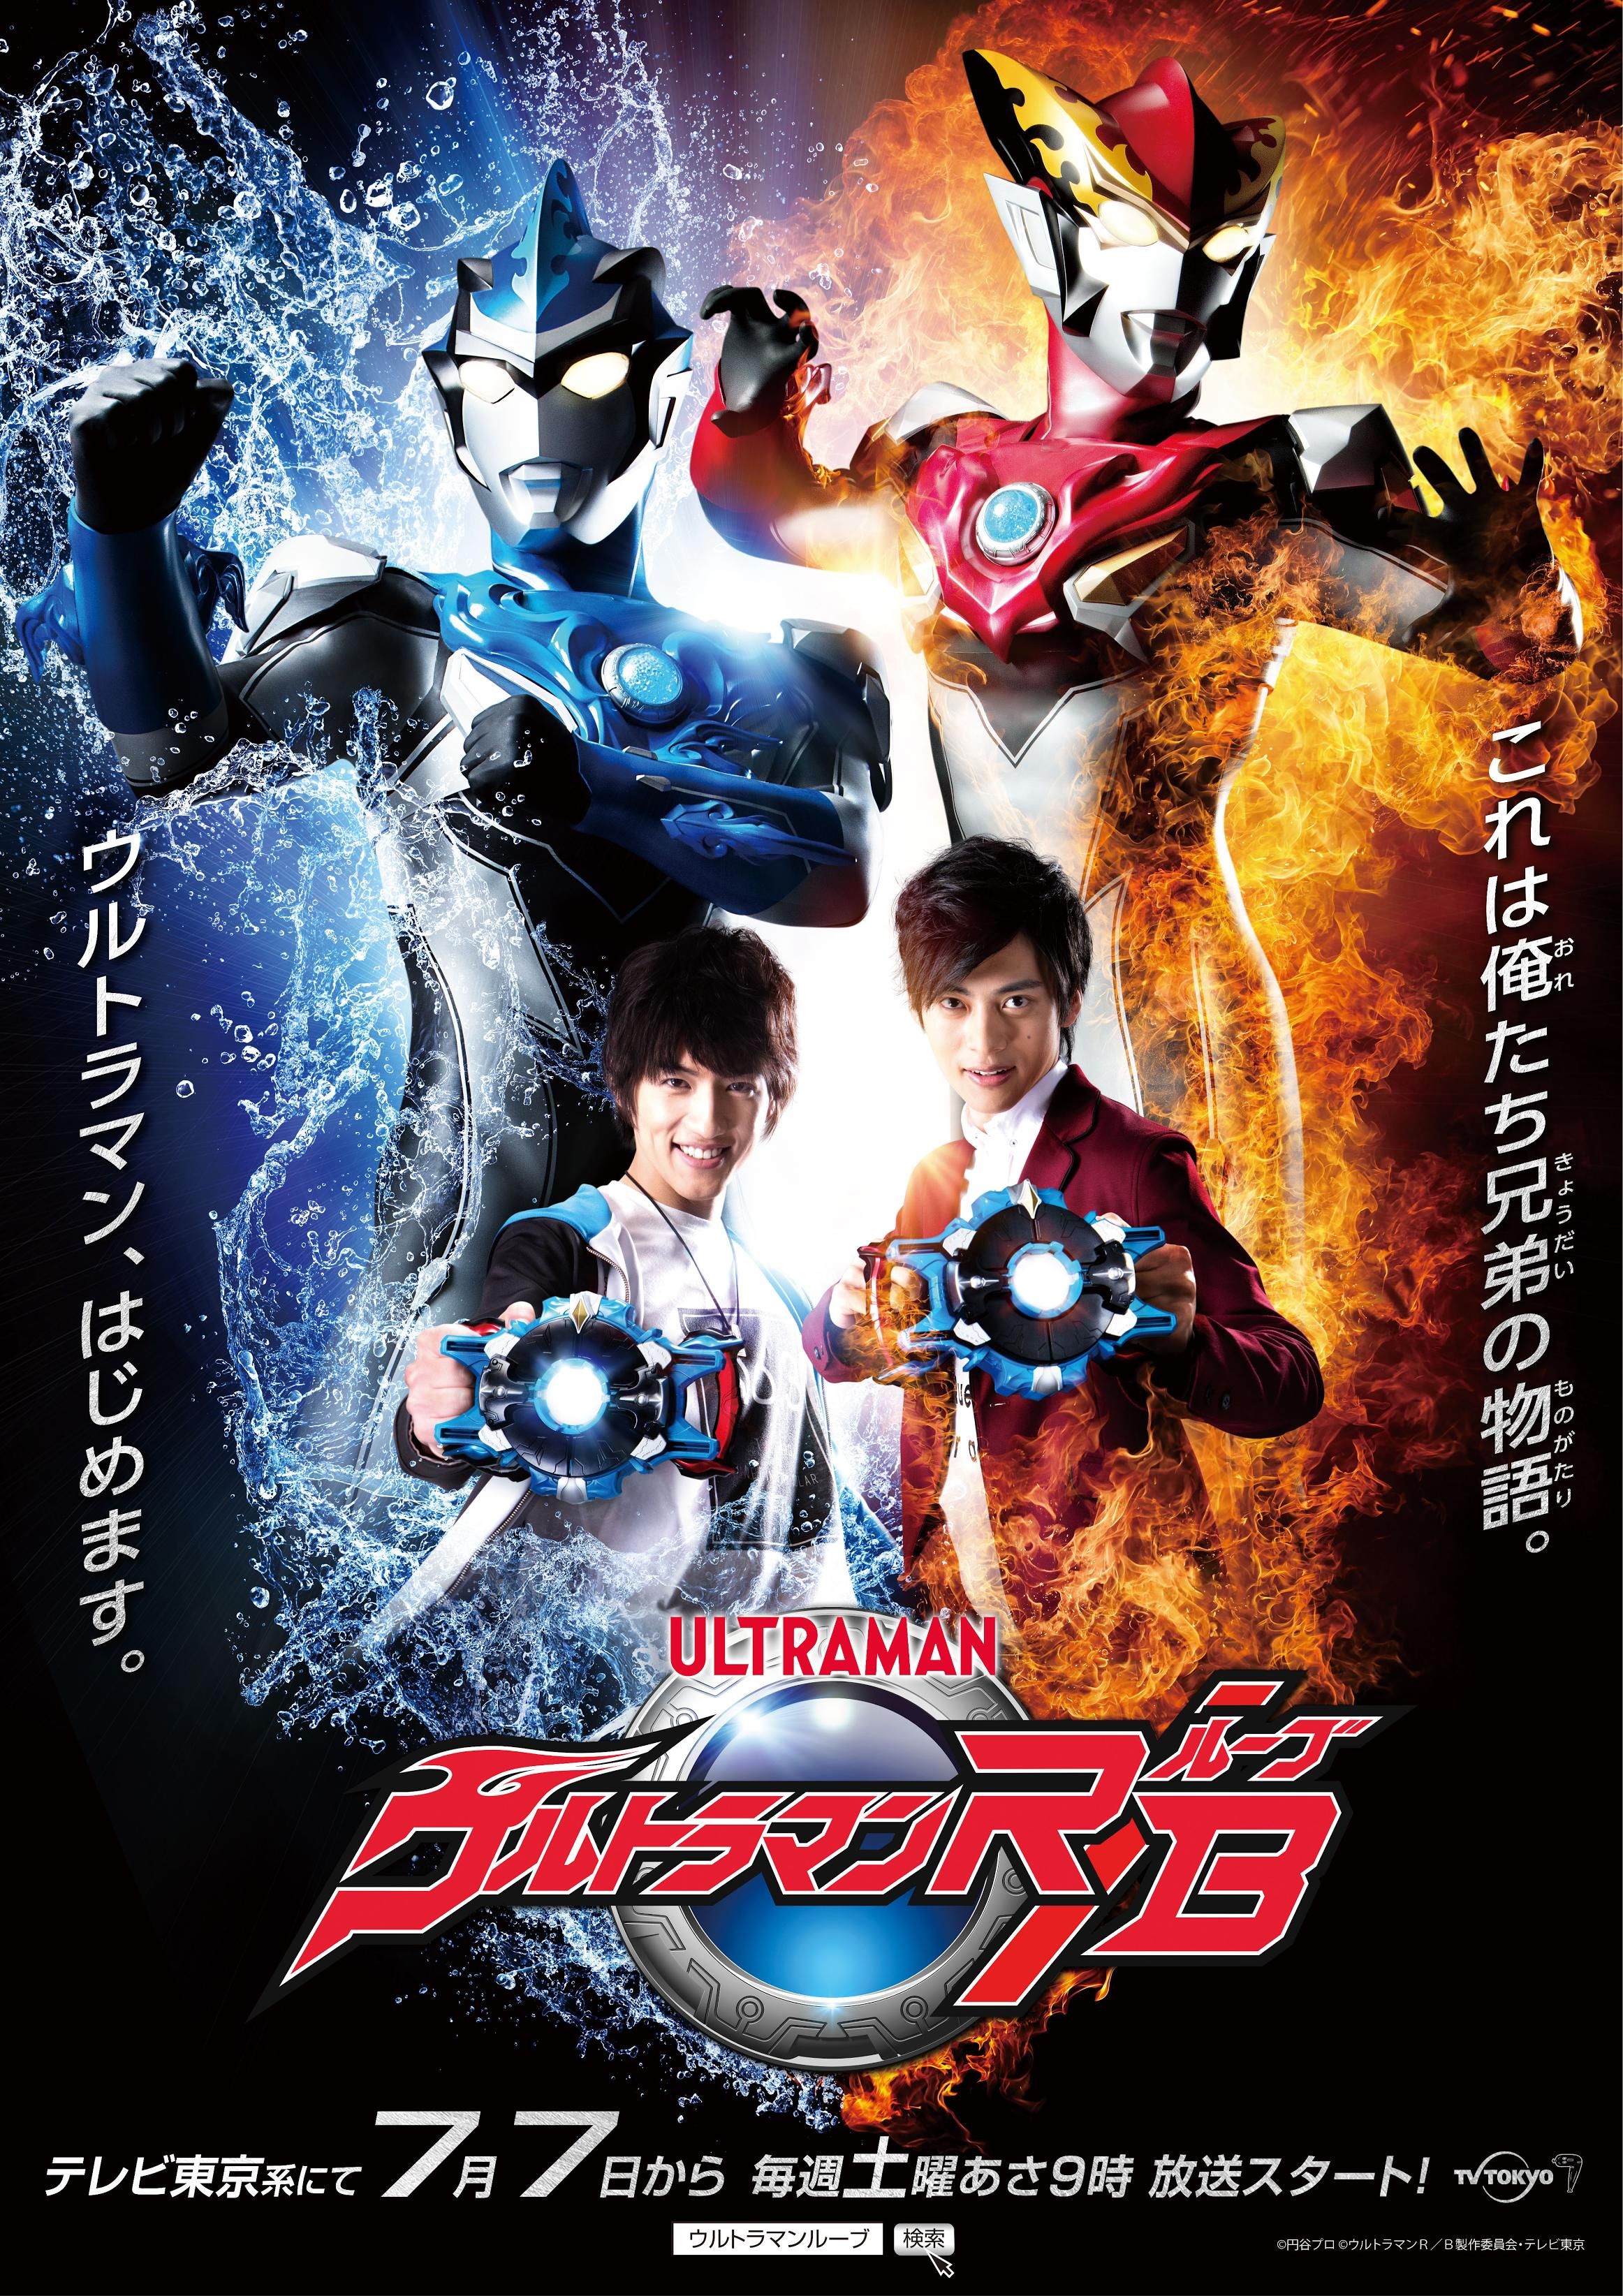 New TV Series “Ultraman R B(Ruebe)” -First Series Starring Ultraman